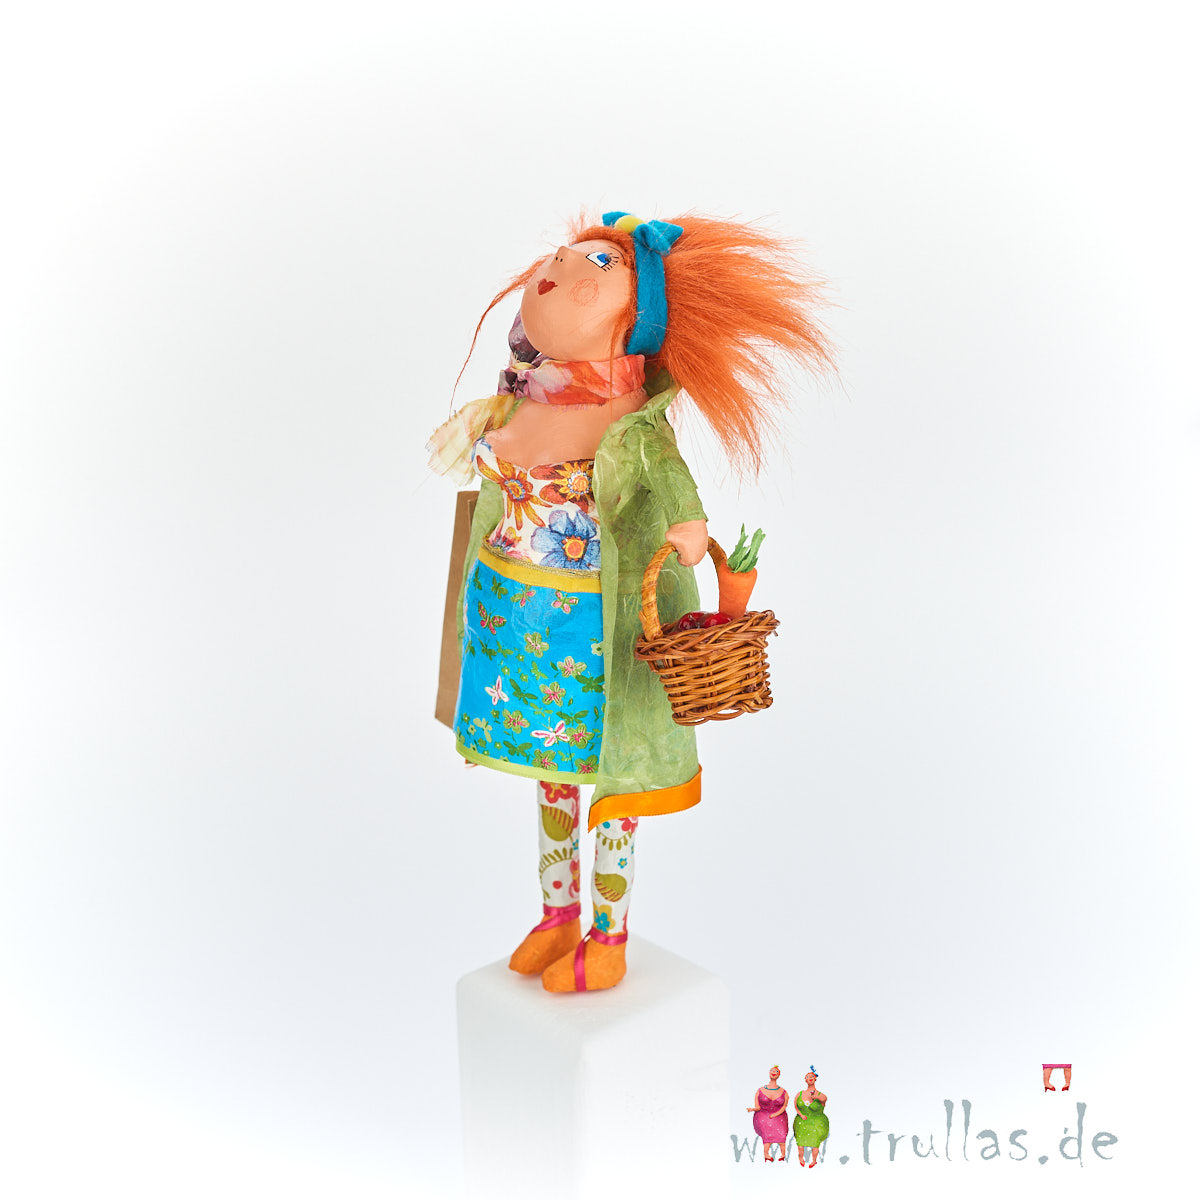 Shopping-Trulla - Lucia ist eine handgefertigte Figur aus Pappmachee. Trullas sind Geschenkideen fur Menschen die handgemachte Kunst schätzen.